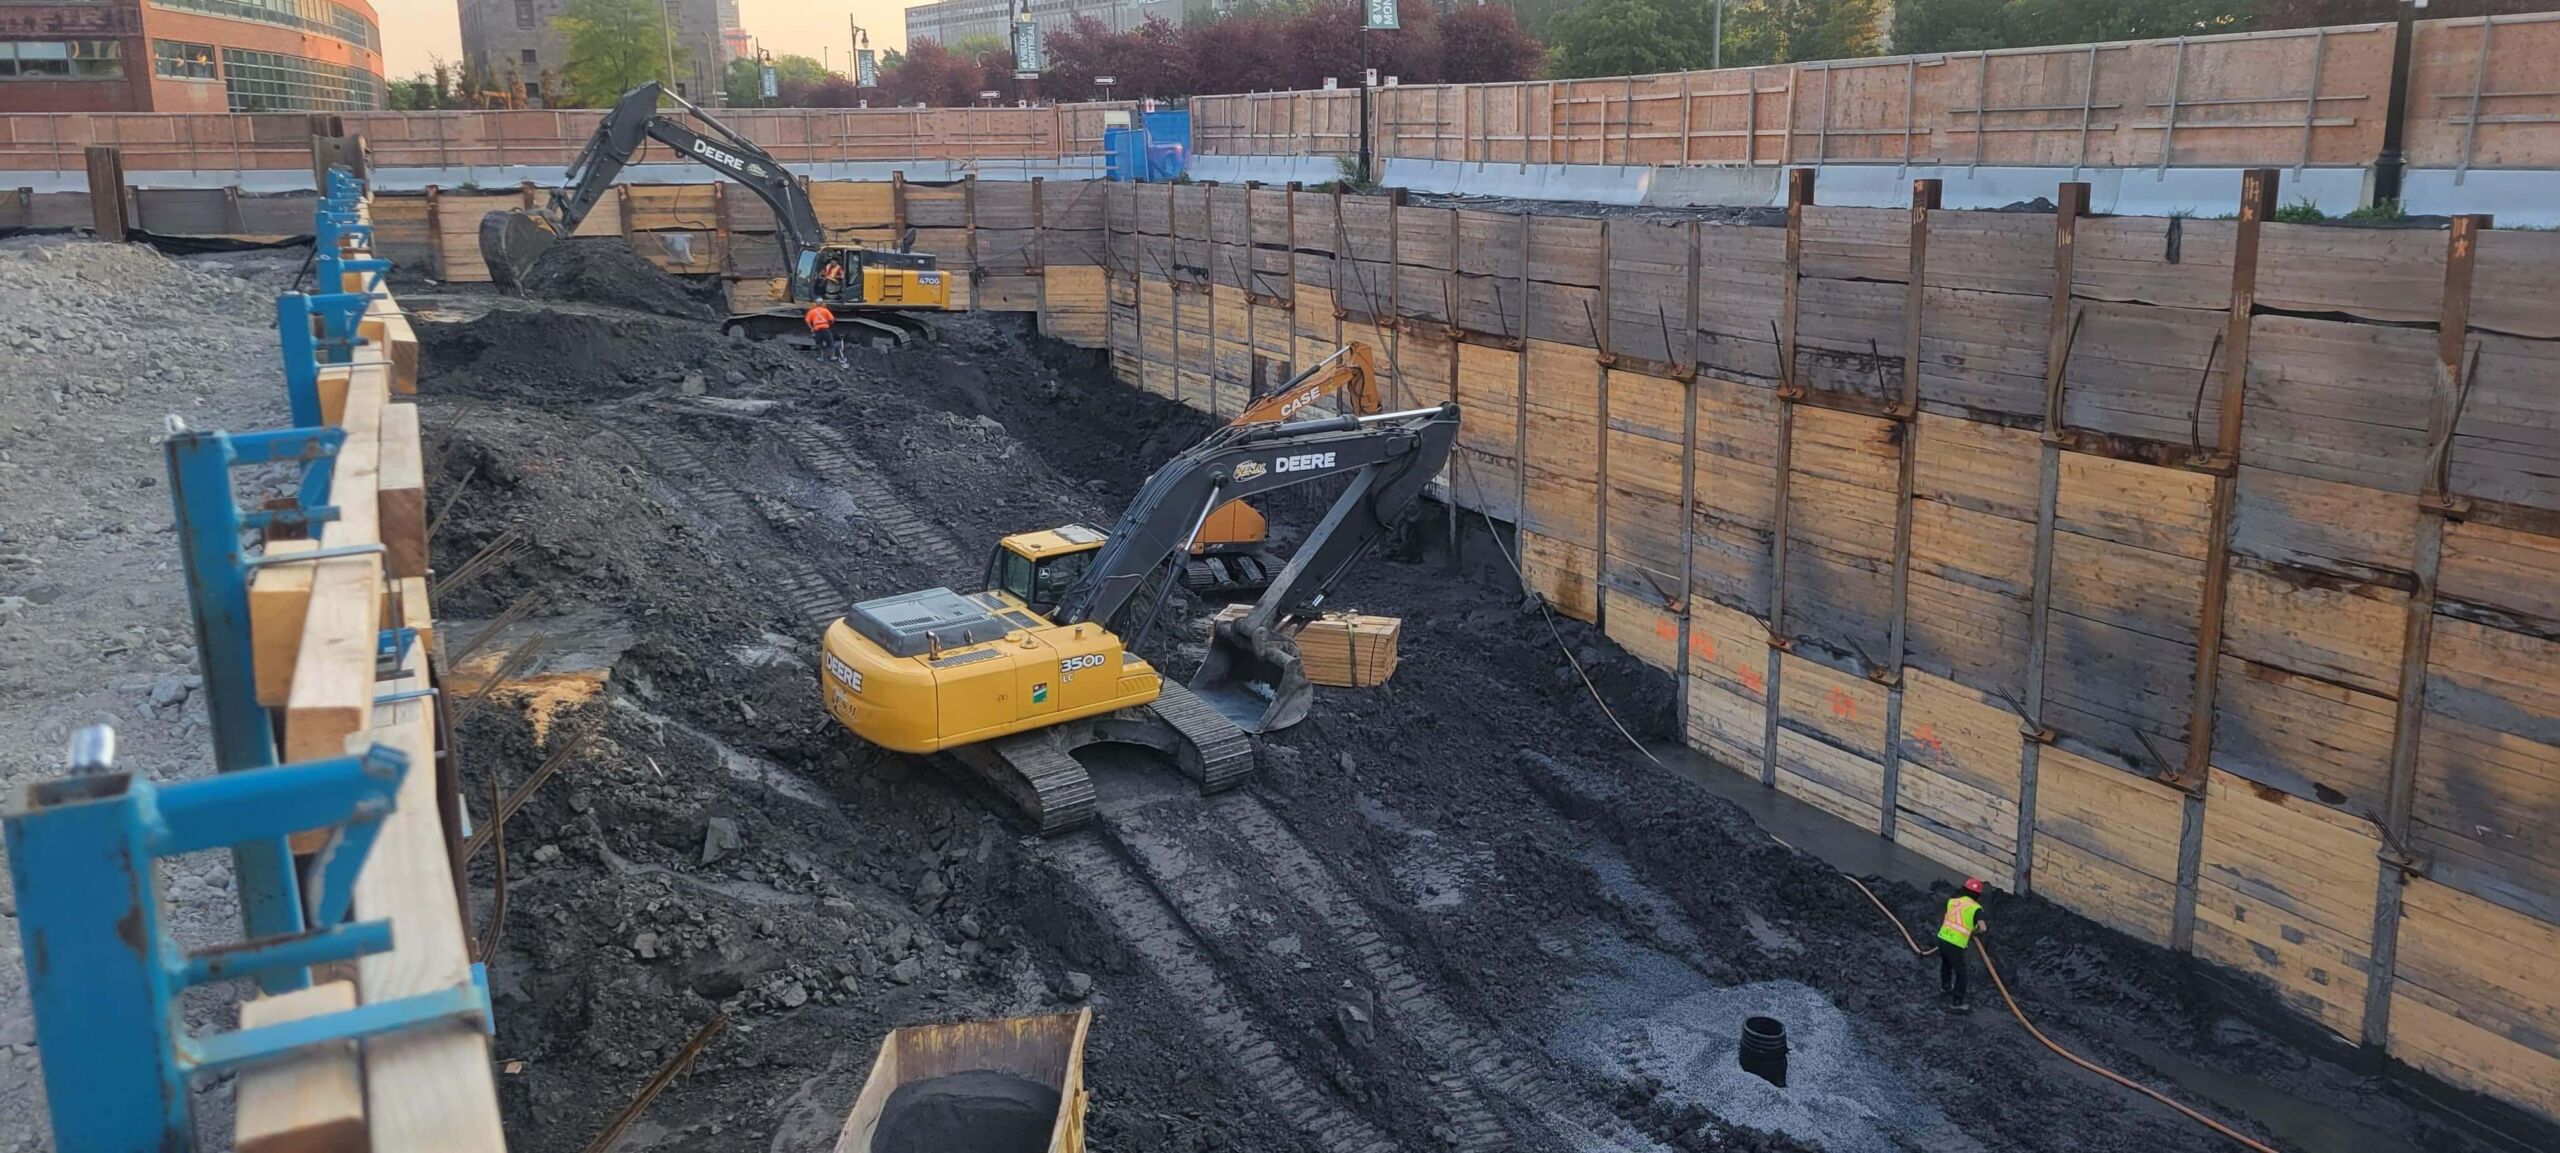 Pelles mécaniques procédant à l'excavation d'un site à Montréal